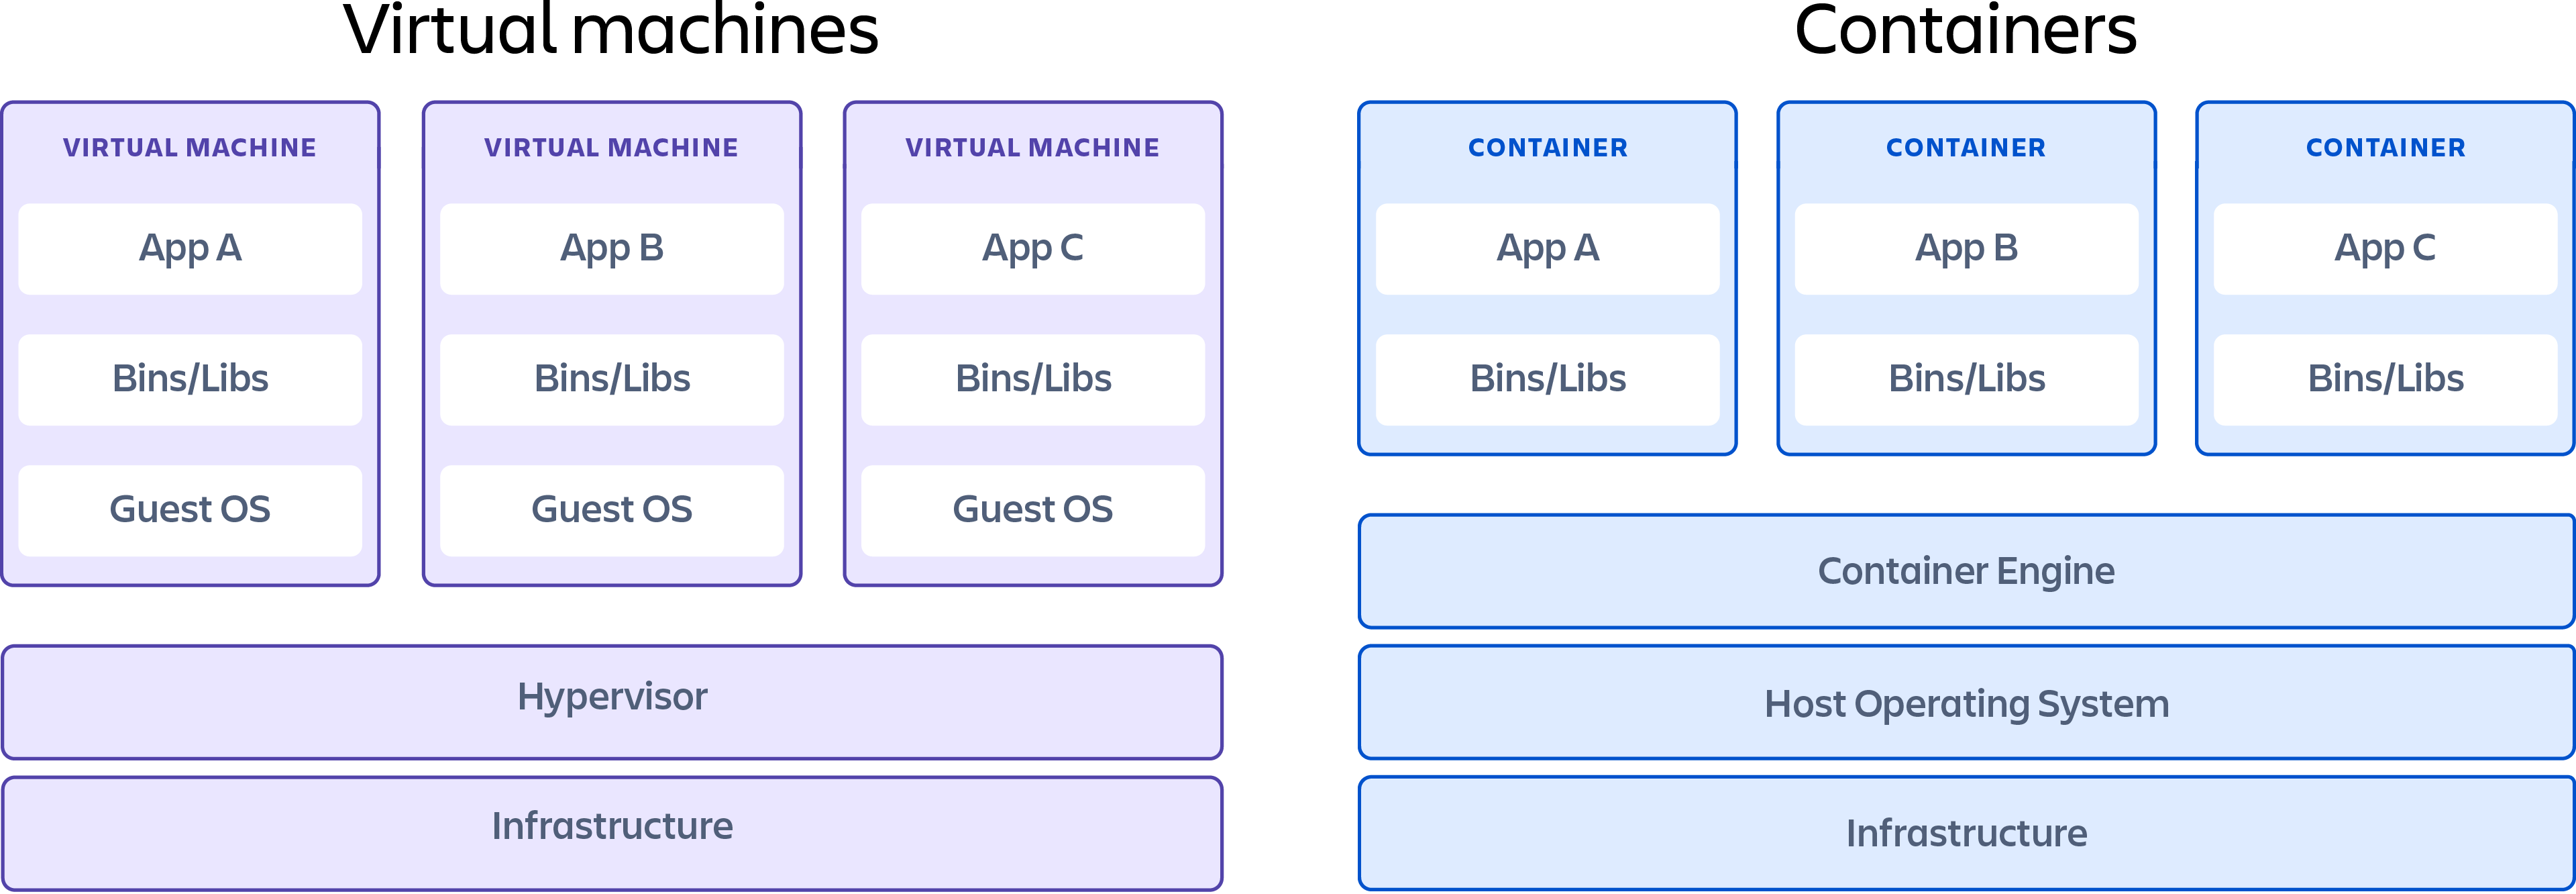 Un contenedor que muestra las diferencias entre las máquinas virtuales y los contenedores.